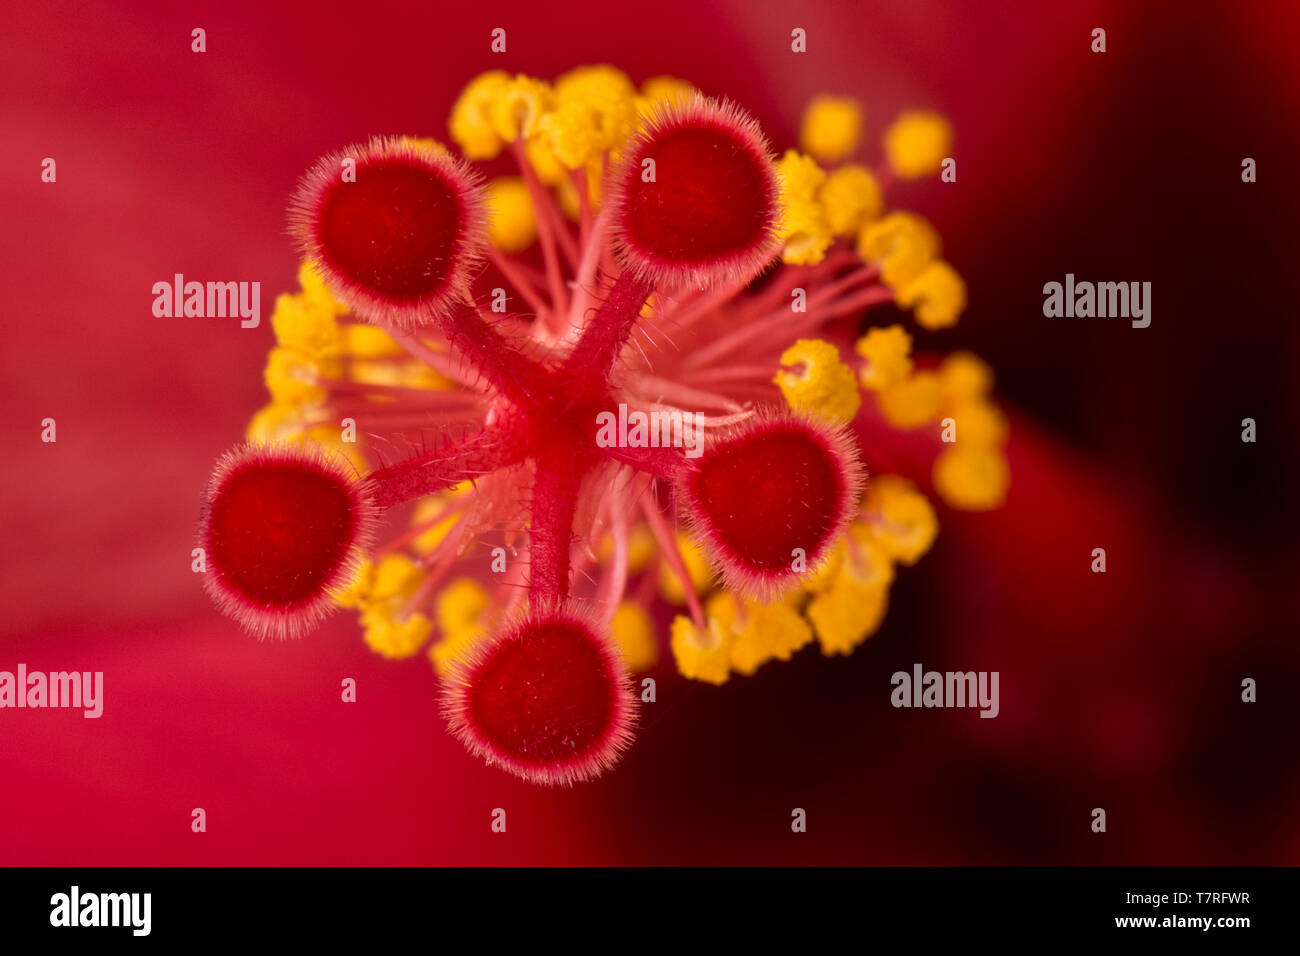 Stigma, den Stil, die Antheren und staubgefäßen von der Blume eines Hibiscus rosa-sinensis Pflanze Stockfoto